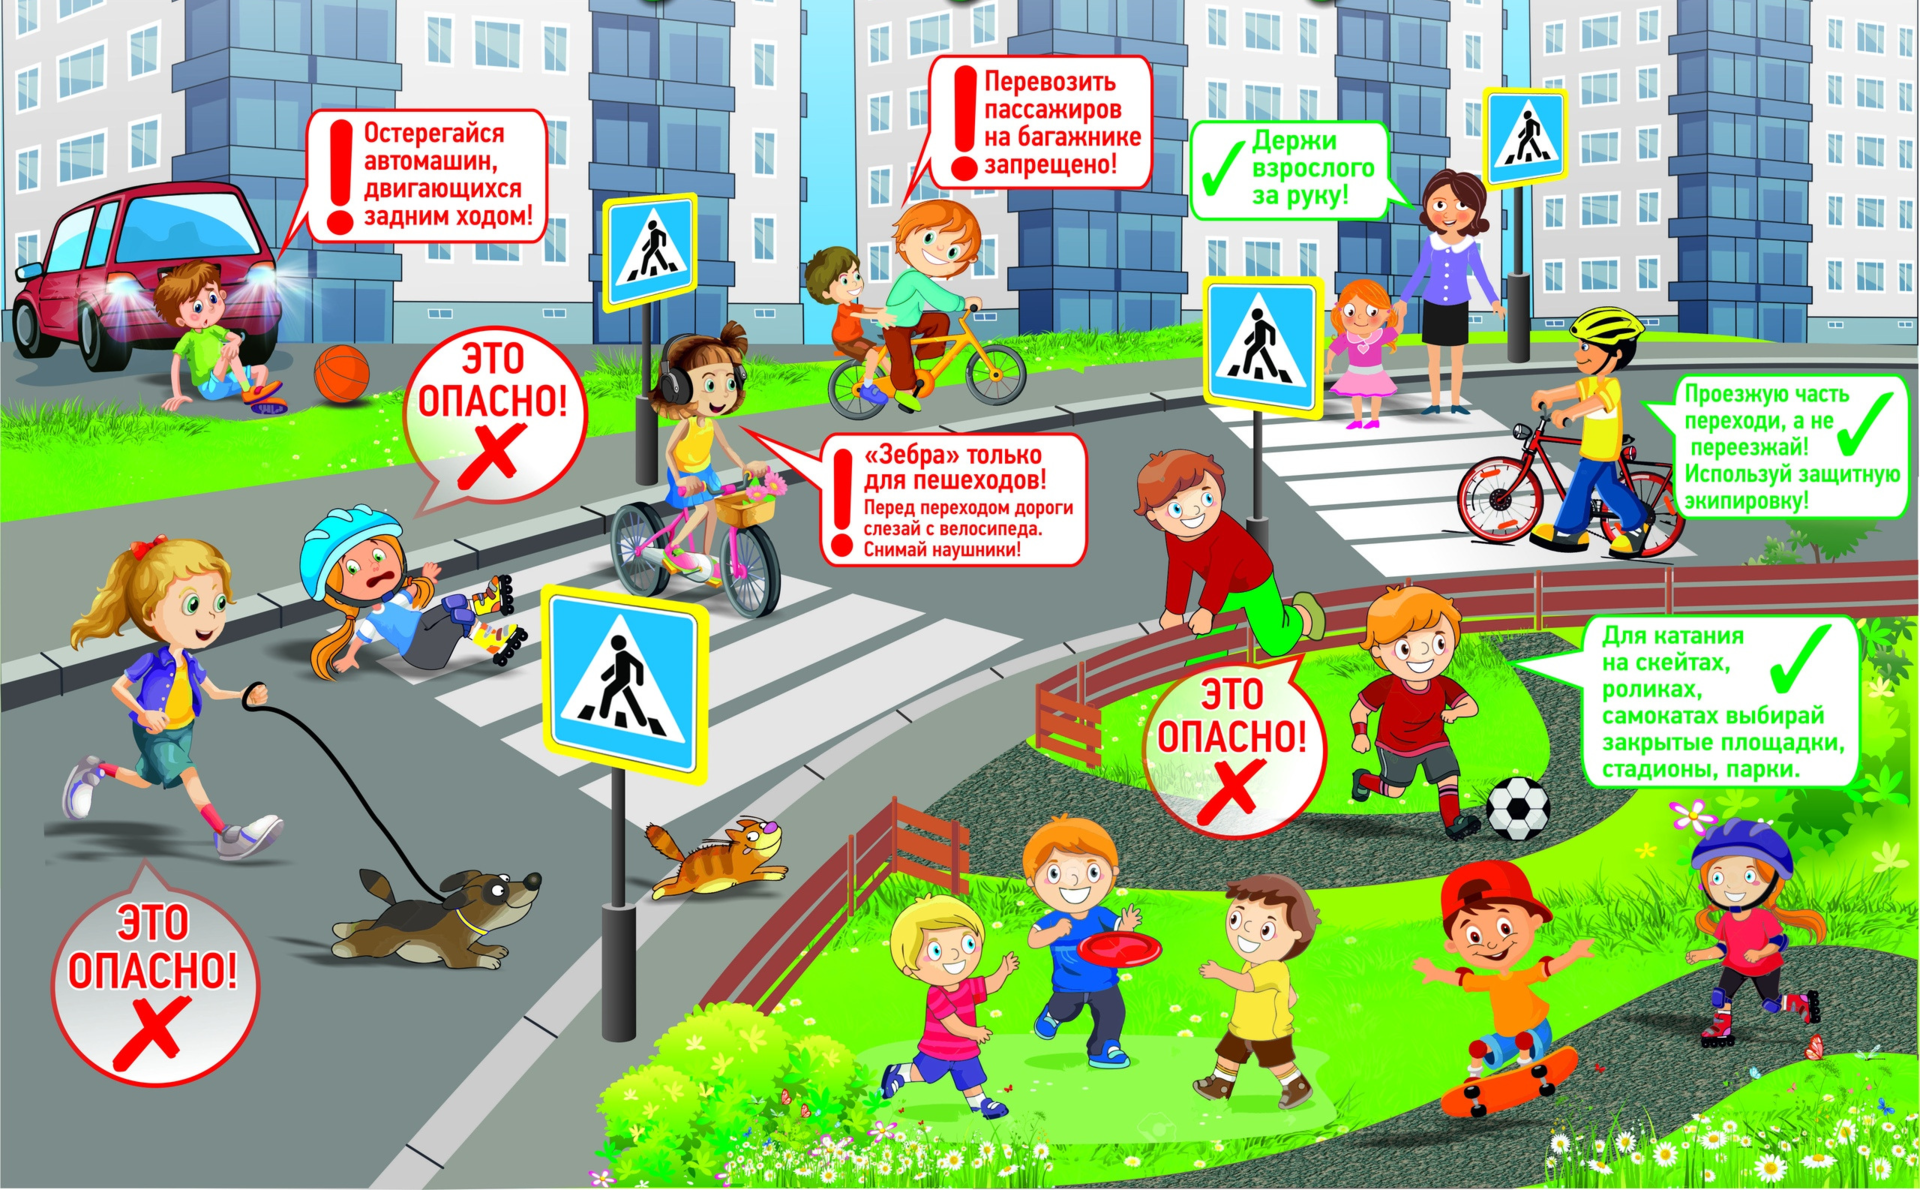 Бдд детям. Плакат по ПДД для детей. Правила дорожного движения летом для детей. Плакат ПДД для школьников. Правила дорожного движение для дитей.